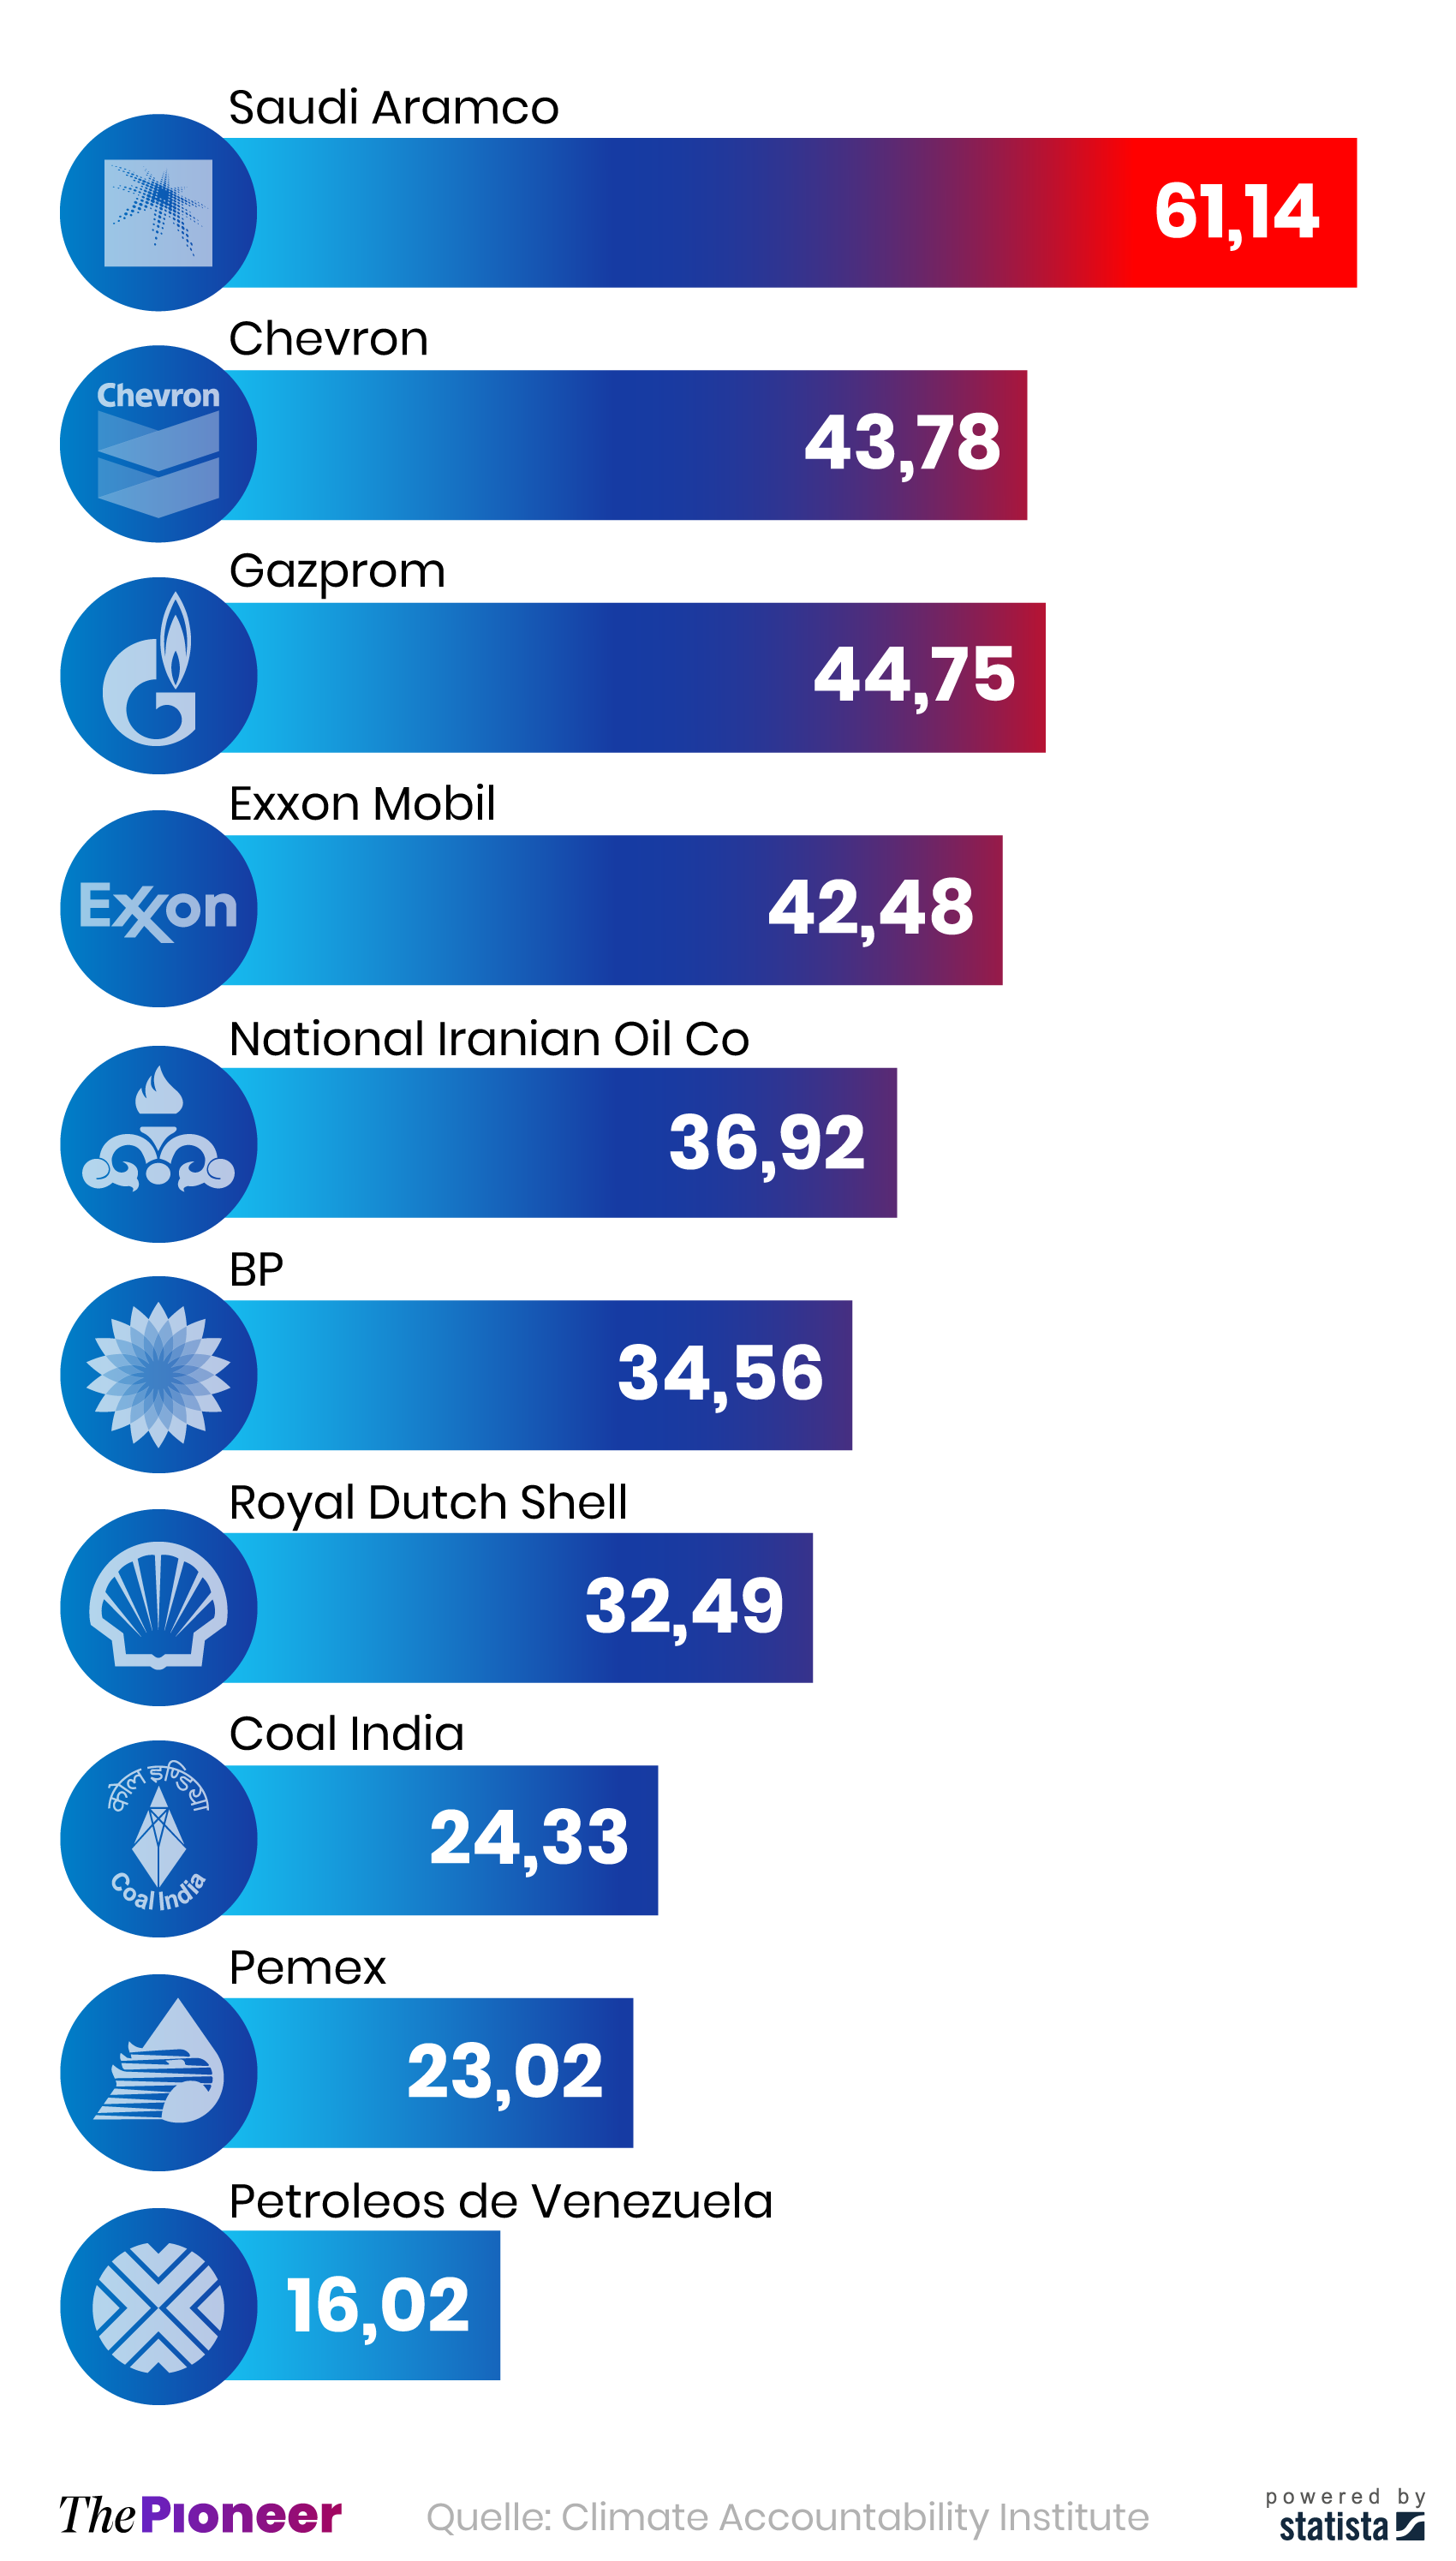 Top zehn Energieunternehmen nach CO2-Emissionen zwischen 1965 und 2018, in Milliarden Tonnen CO2